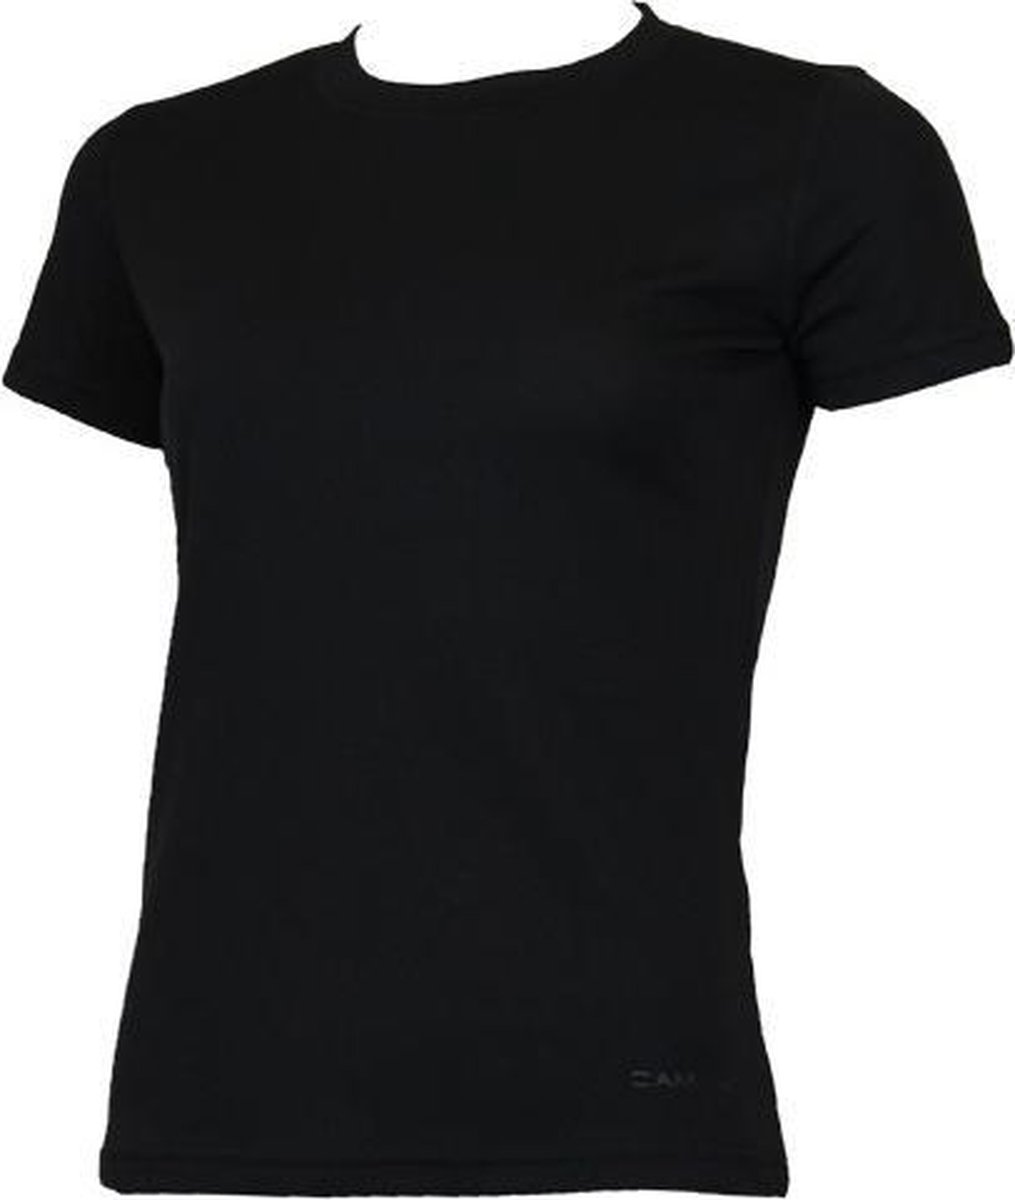 Campri Thermoshirt met korte mouw - Dames - Black (020) - maat L